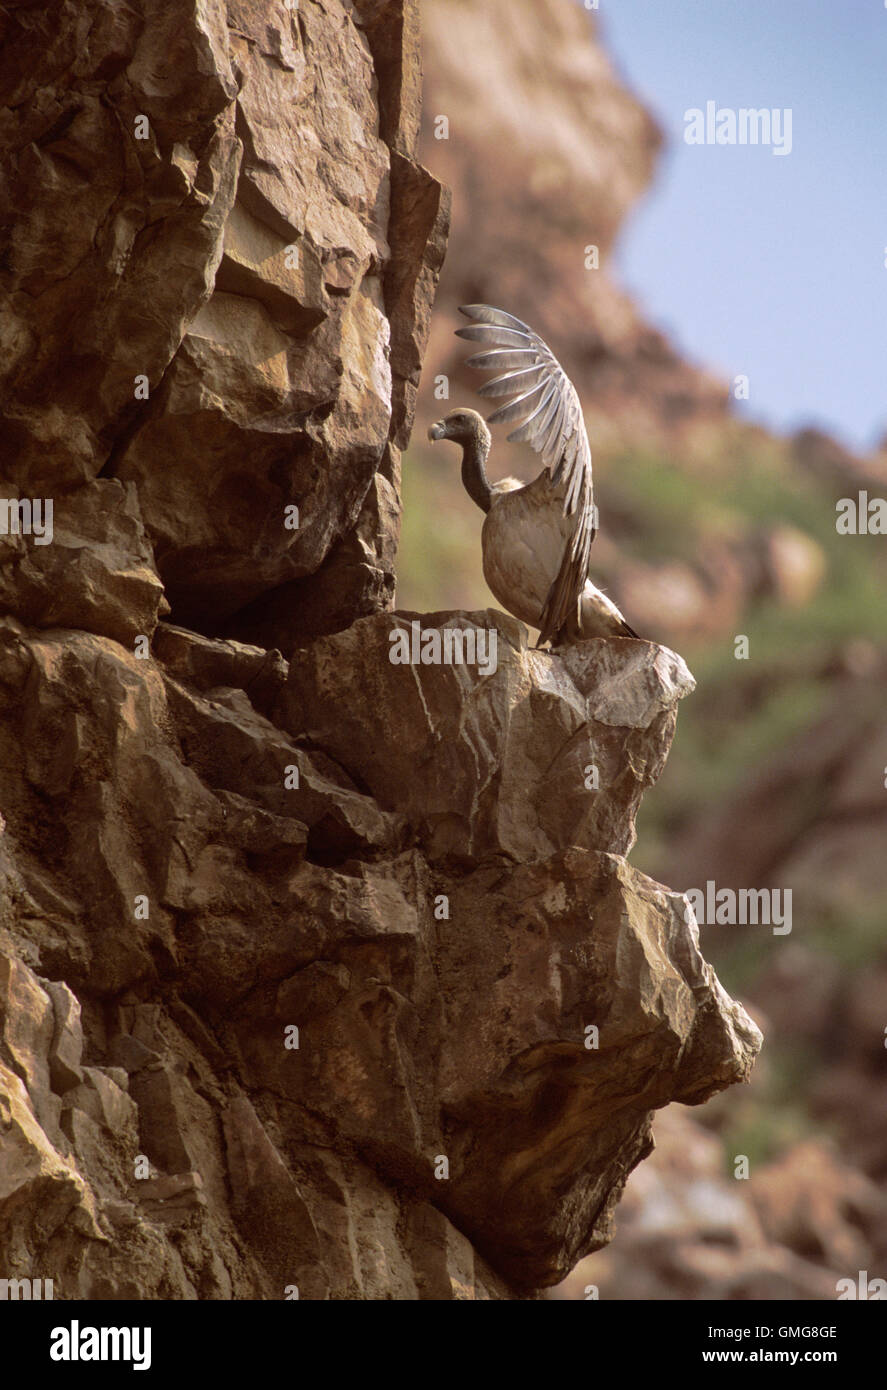 Buitre indio, anteriormente buitre de pico largo, Gyps indicus, tomar el sol con alas esparcidas en el borde del acantilado,Rajasthan, India-una especie críticamente en peligro. Foto de stock